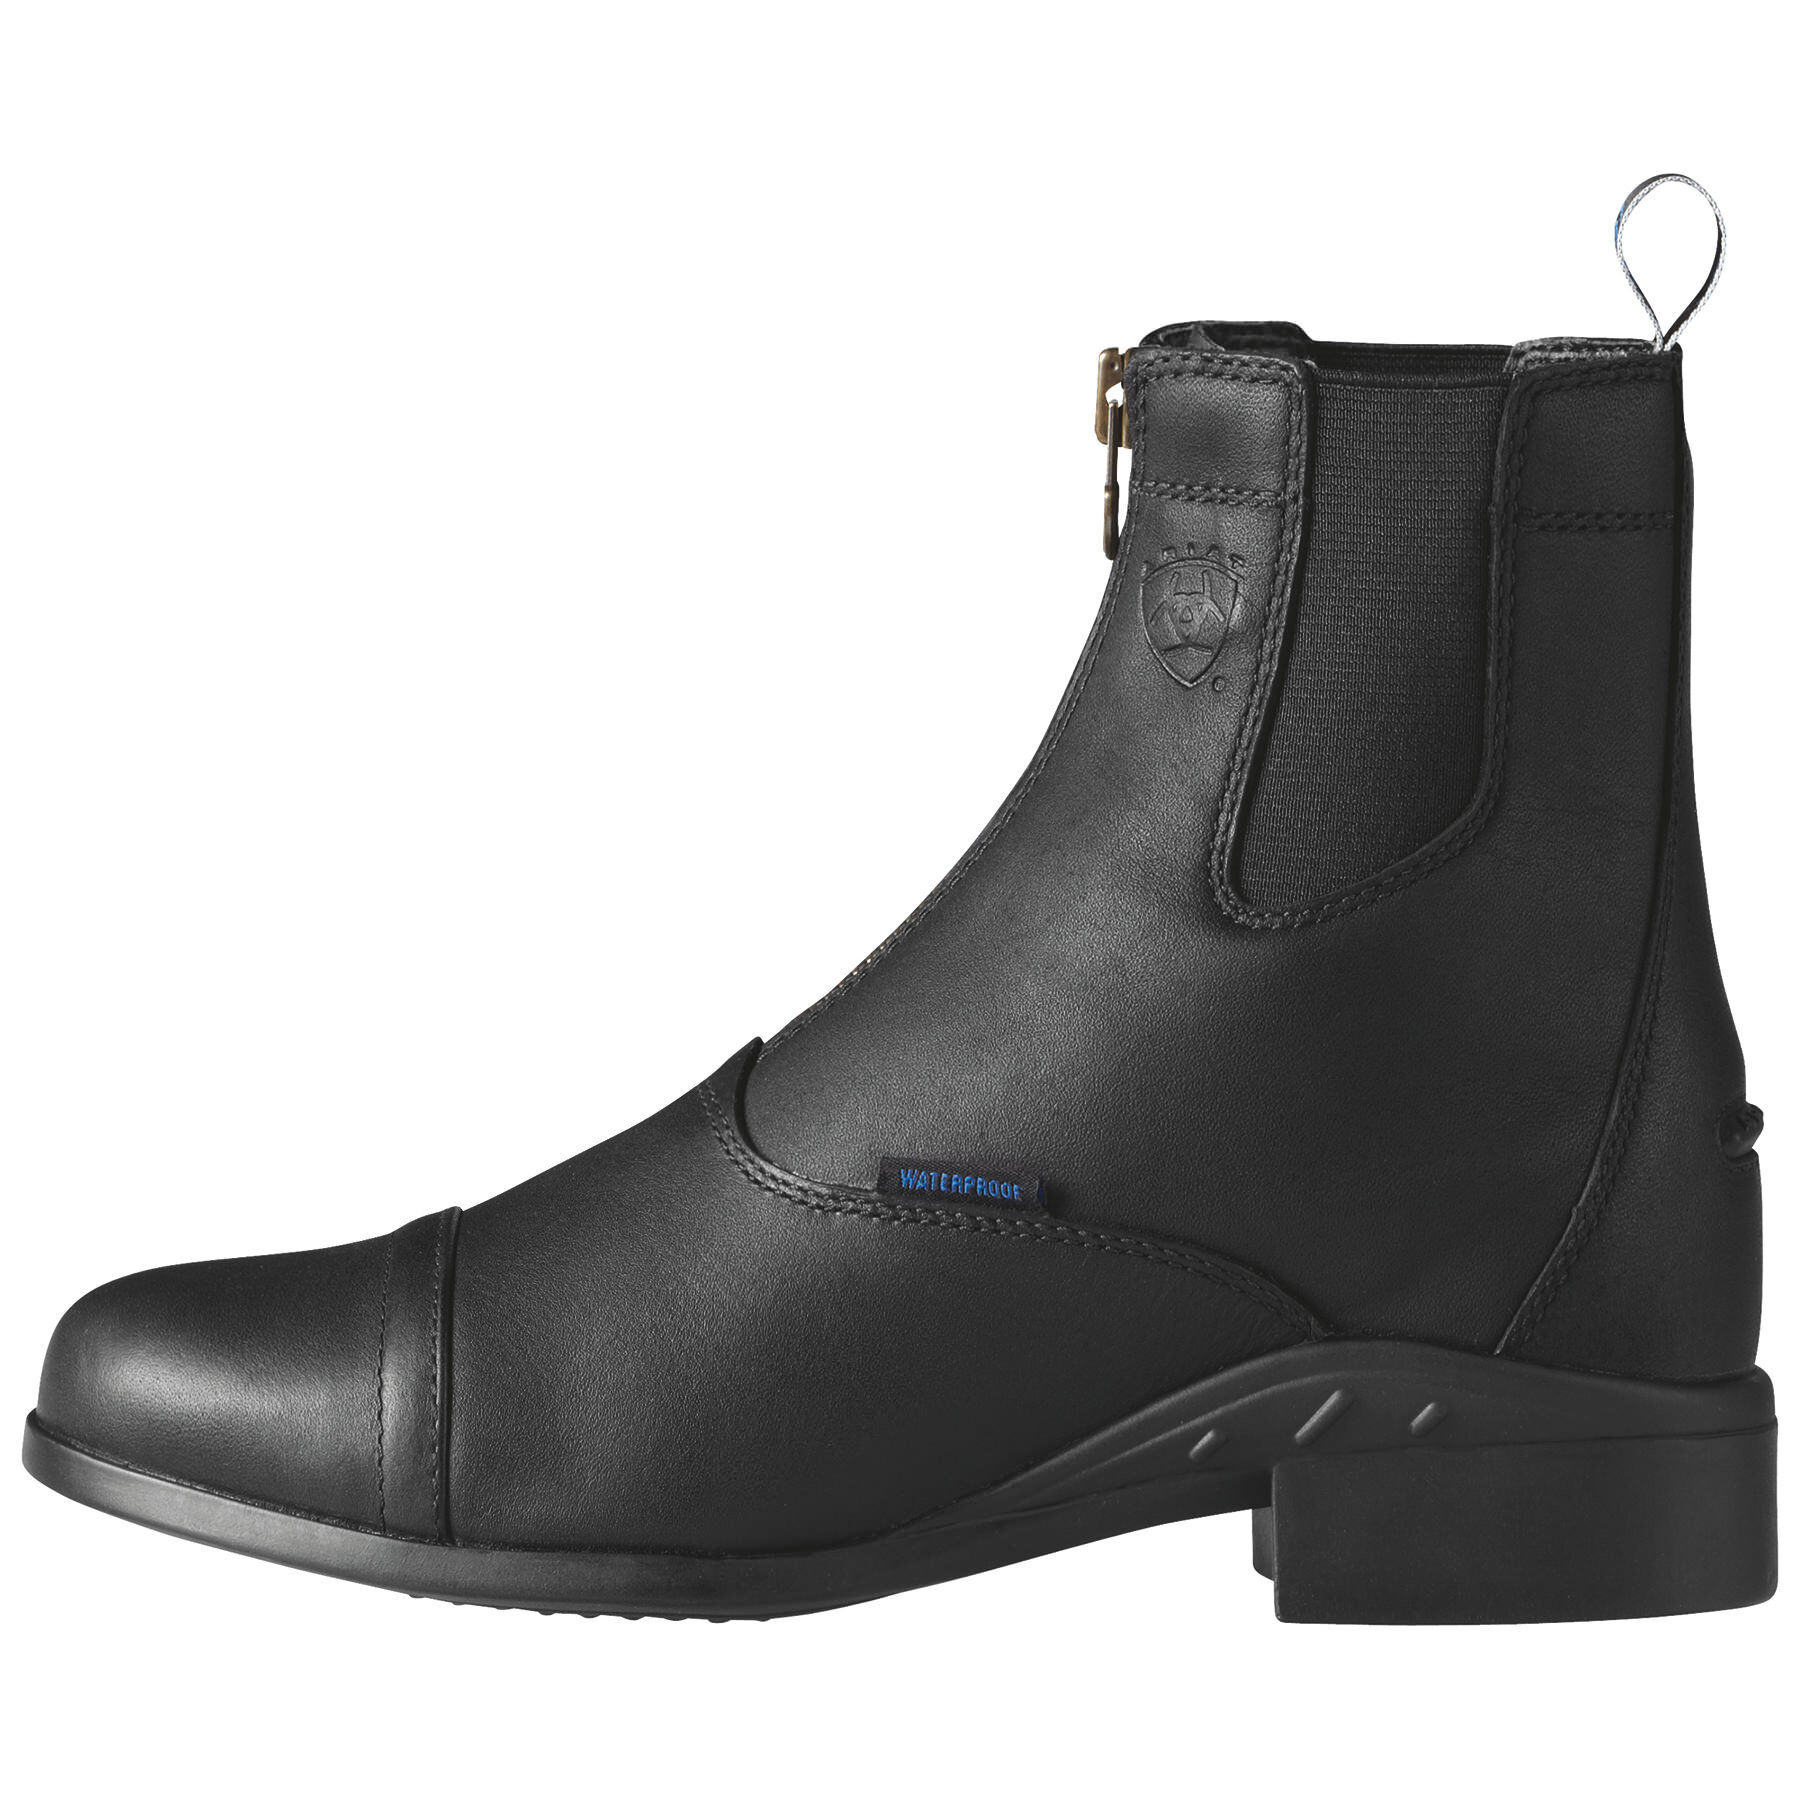 ariat waterproof paddock boots